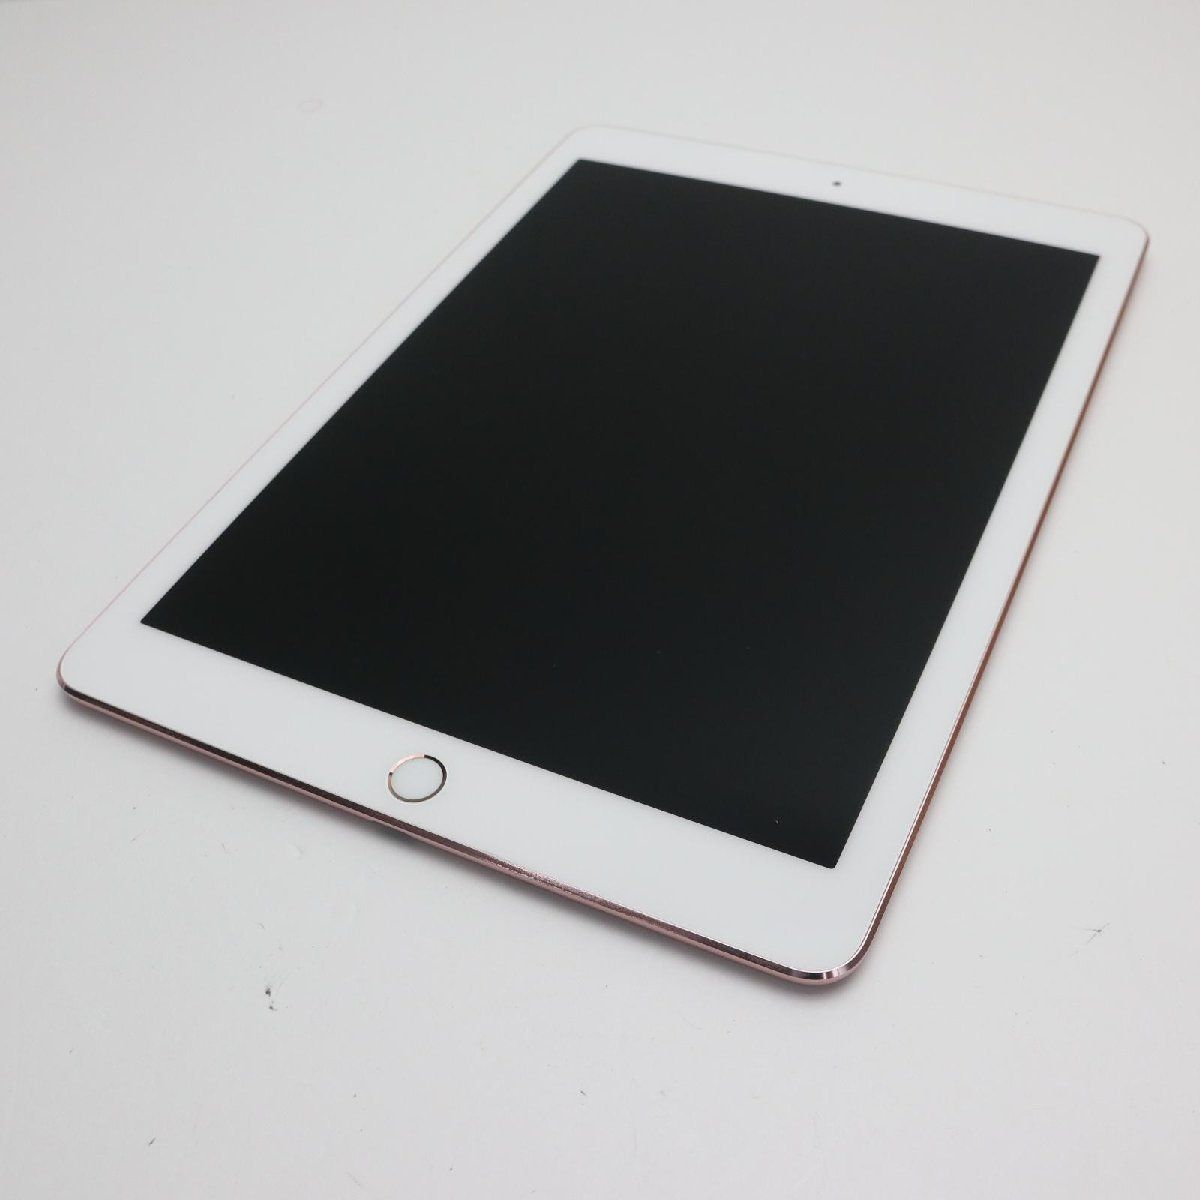 美品 iPad Pro 9.7インチ Wi-Fi 256GB ローズゴールド タブレット 即日発送 Apple 土日祝発送OK 07000